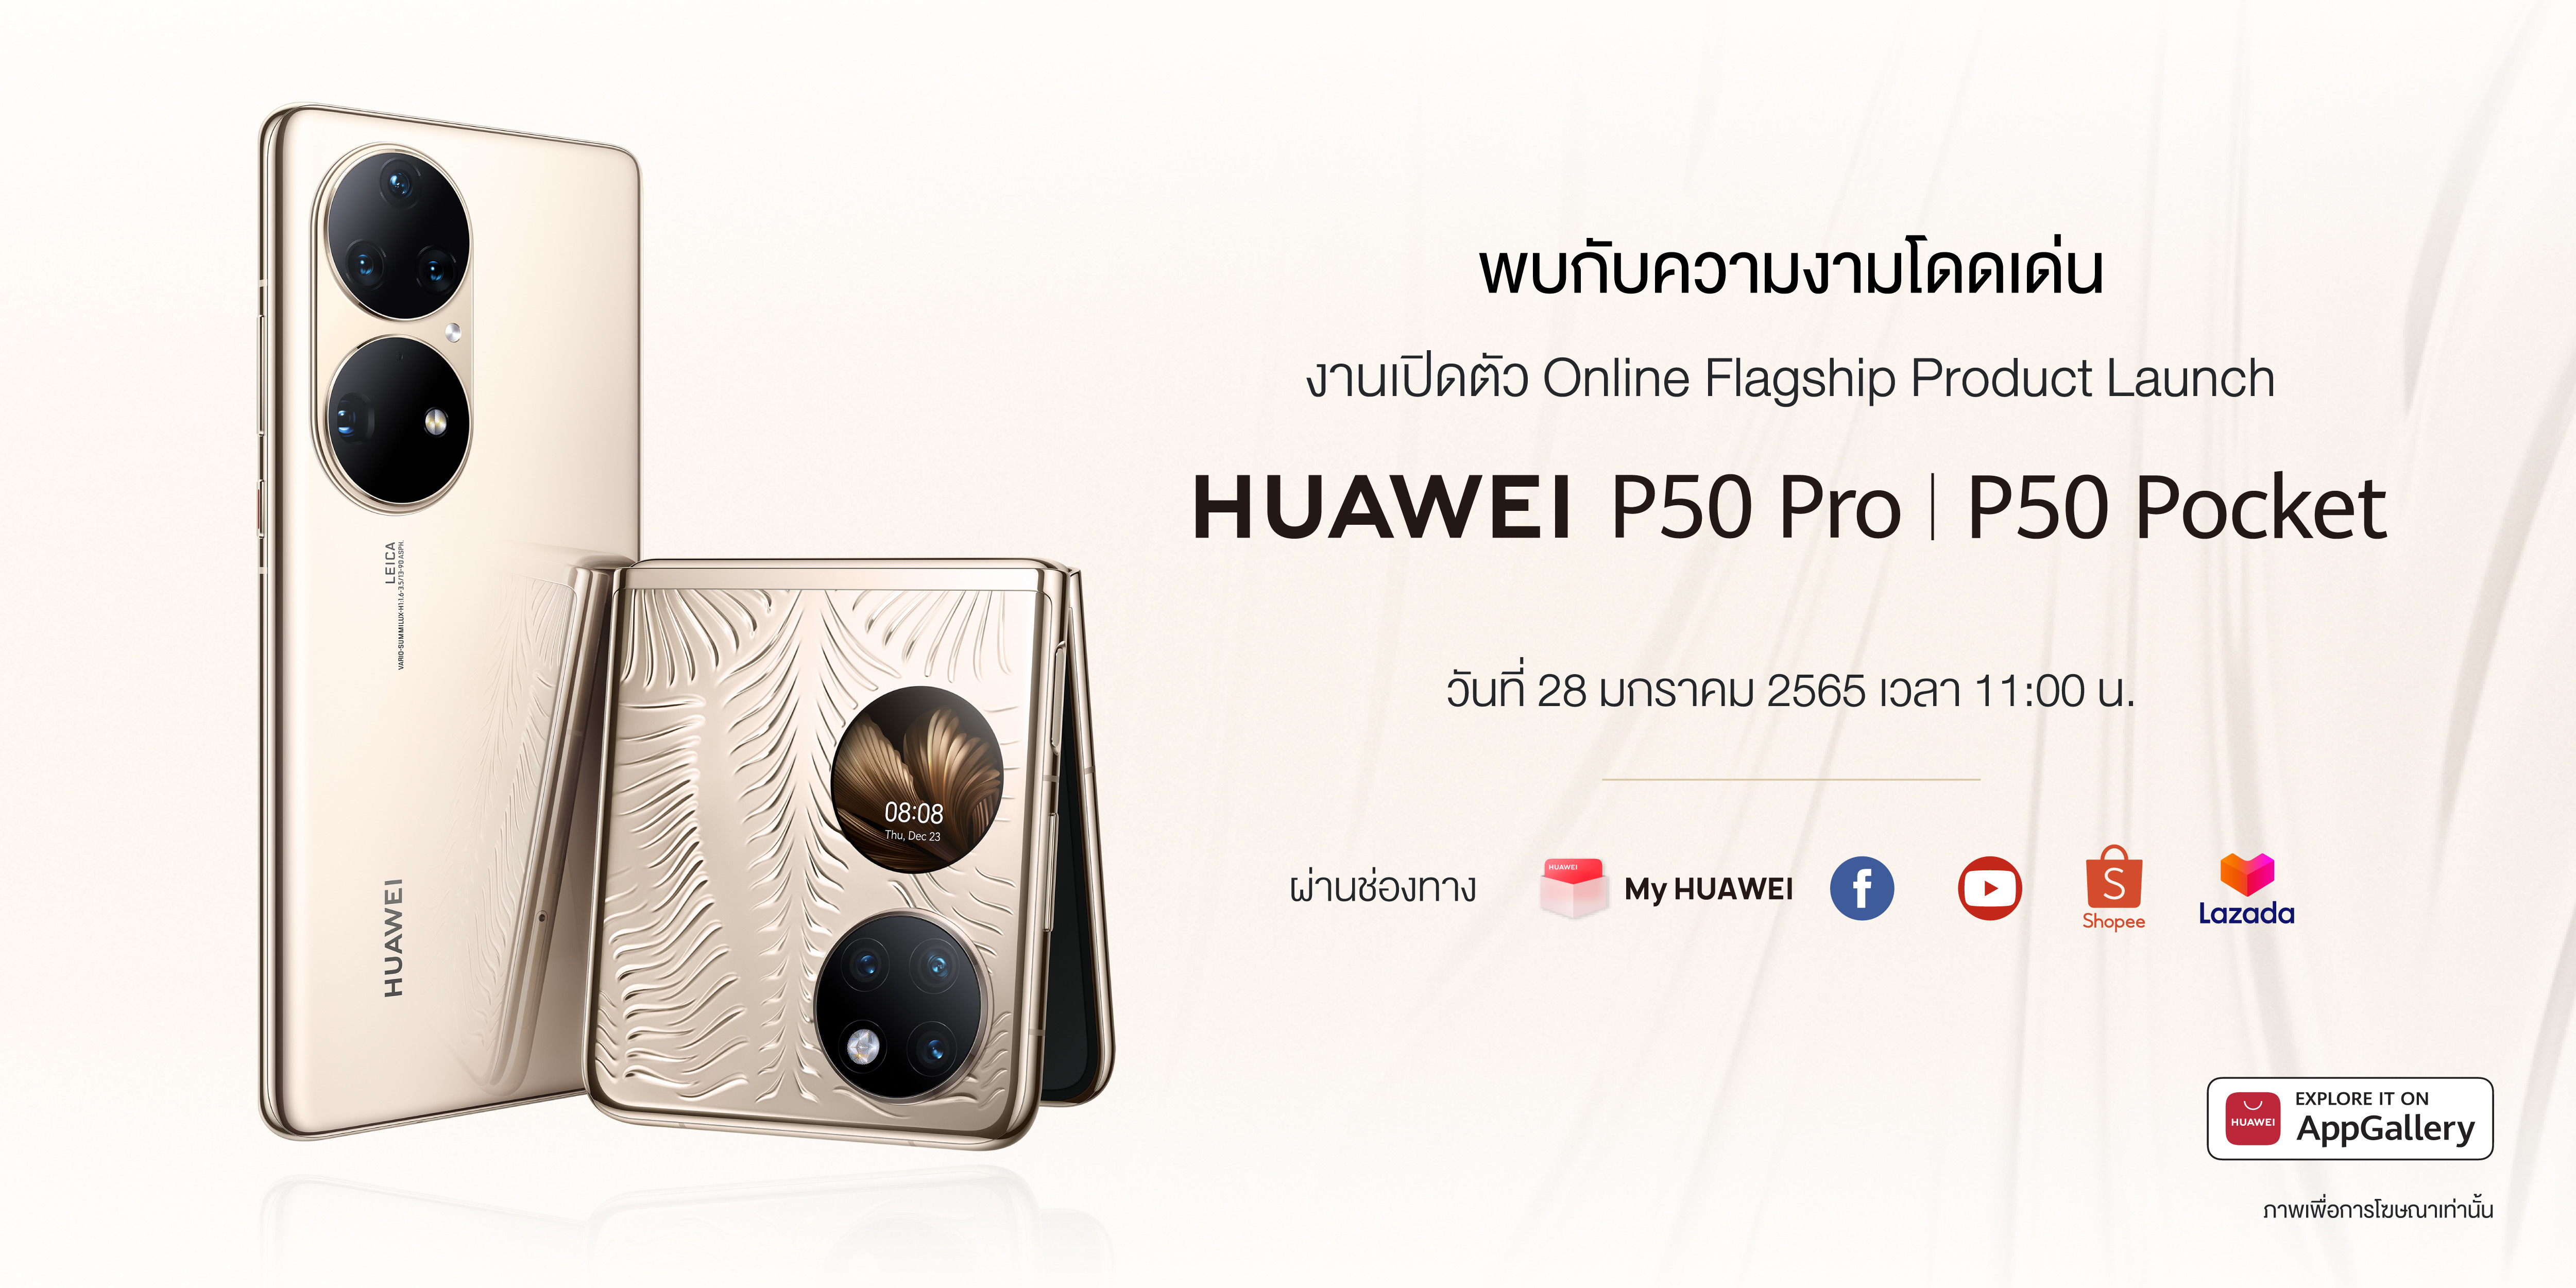 แง้มฟีเจอร์สุดว้าว อะไรบ้างที่จะได้เห็นใน HUAWEI P50 Pro และ HUAWEI P50 Pocket  เปิดตัวในไทย 28 มกราคม 2565 นี้